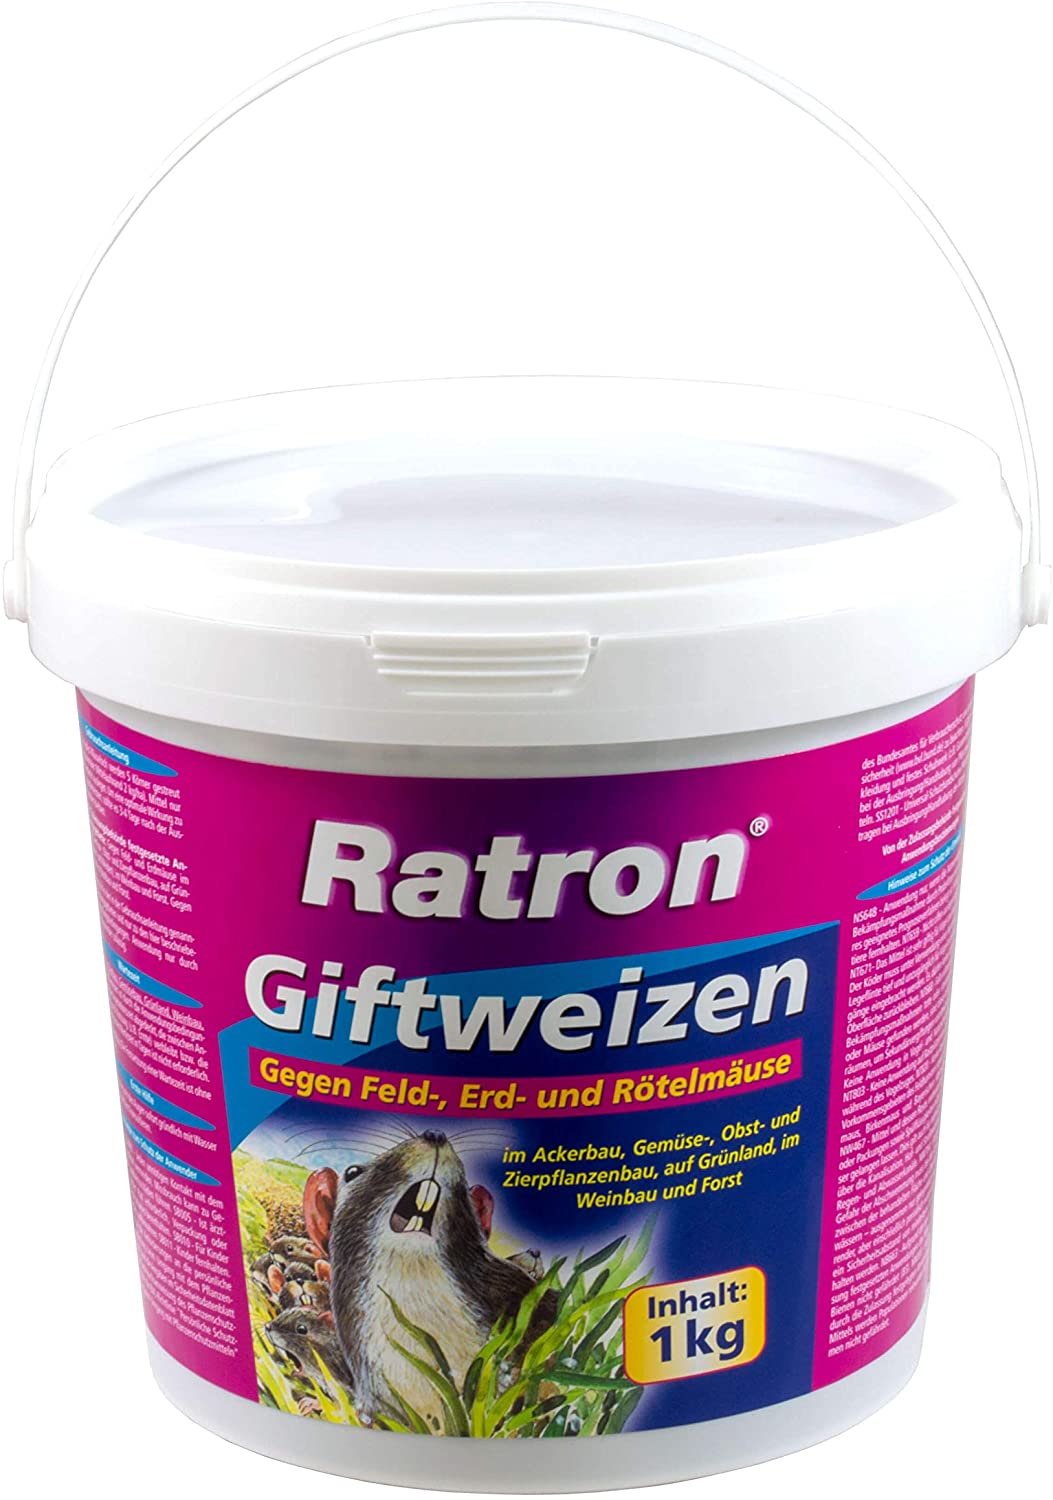 Rattenloch Im Garten Elegant Frunol Ratron Giftweizen 1 Kg Amazon Garten